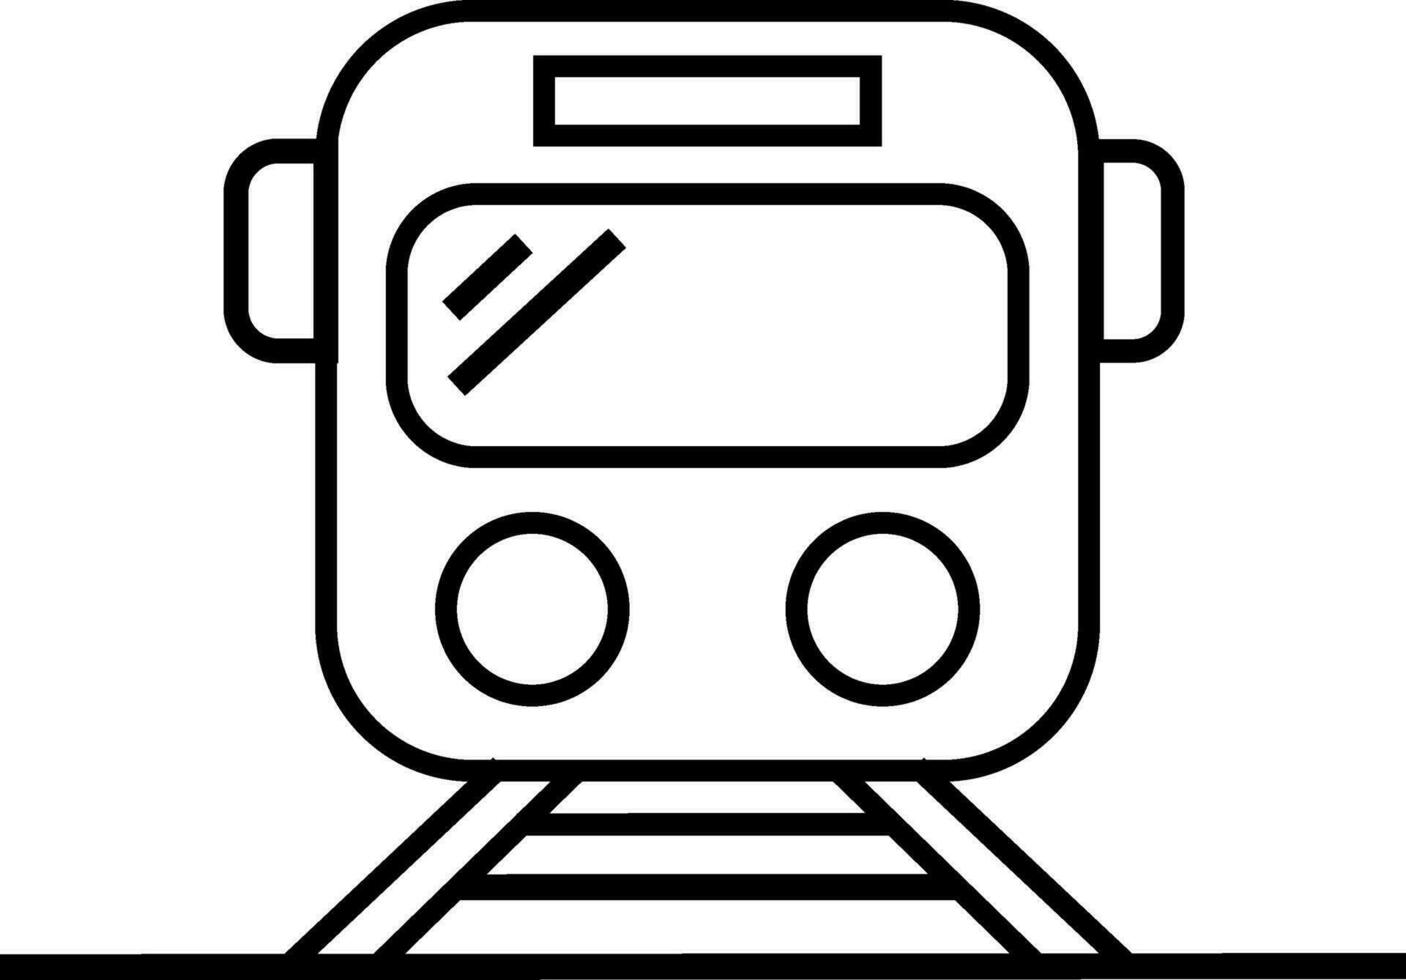 vlak stijl illustratie van trein. vector